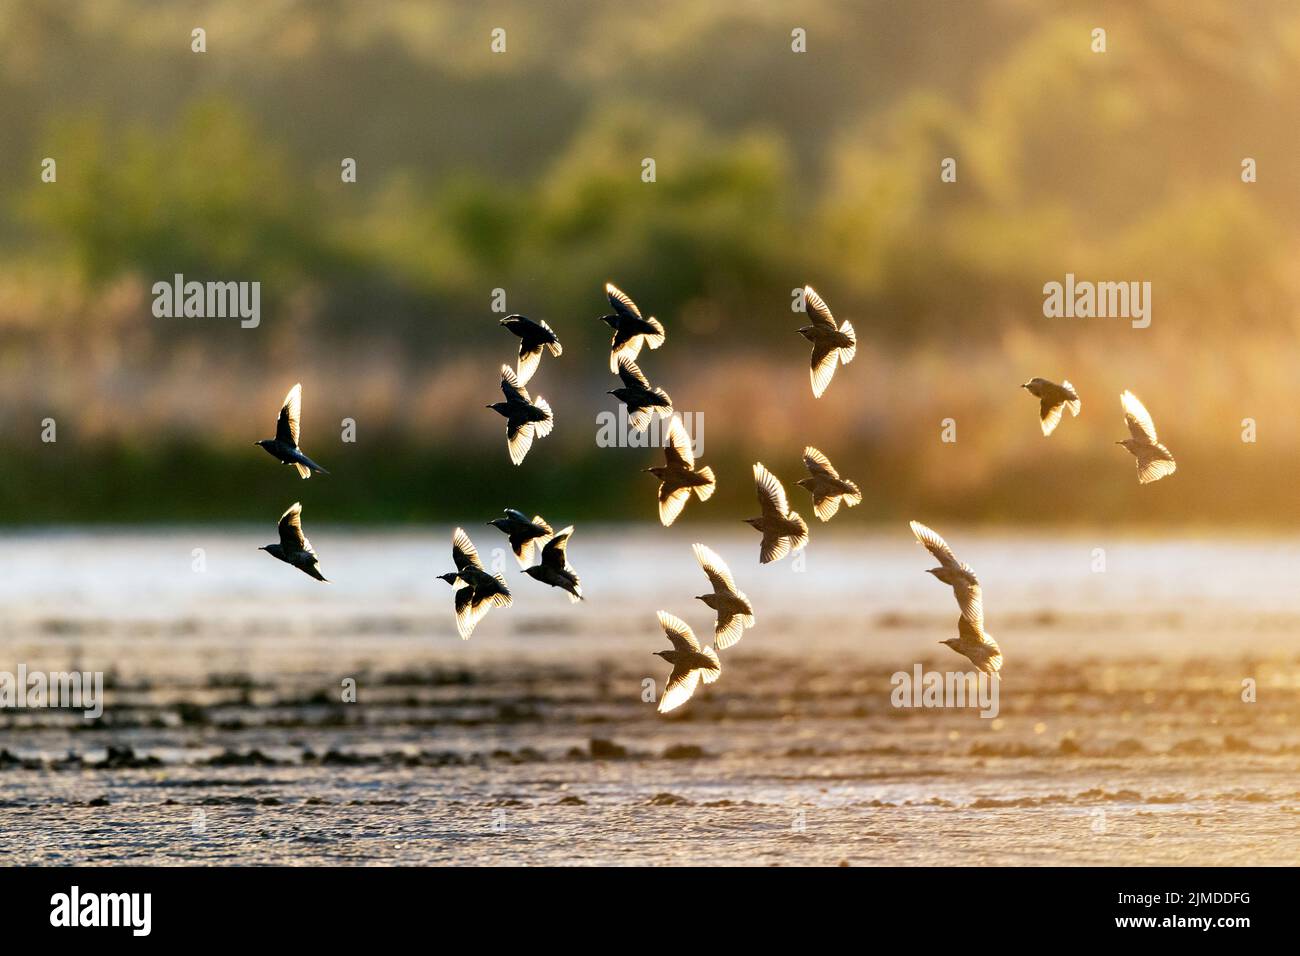 Starling flock of birds in backlight / Sturnus vulgaris Stock Photo